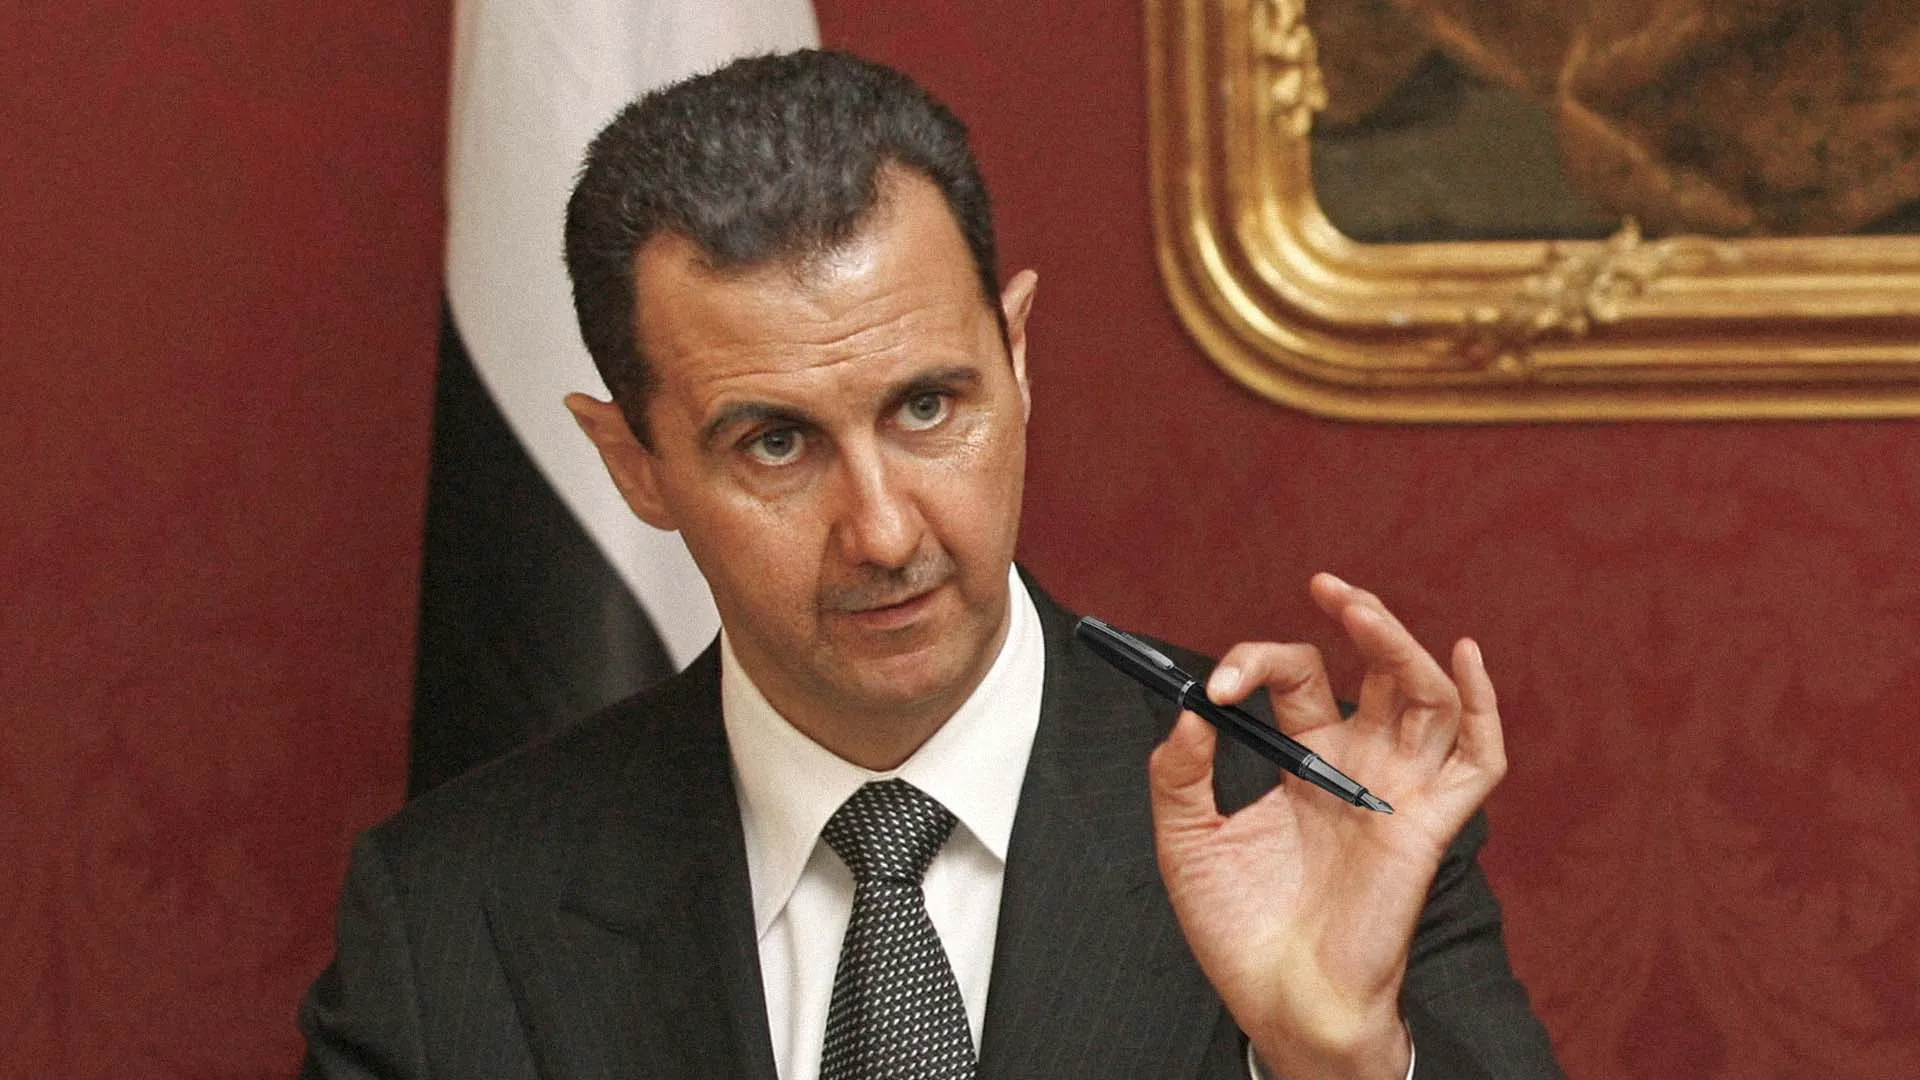 "ليبراسيون" الفرنسية": "بشار الأسد" يستغل الحرب في أوكرانيا لاستعادة مكانته دولياً